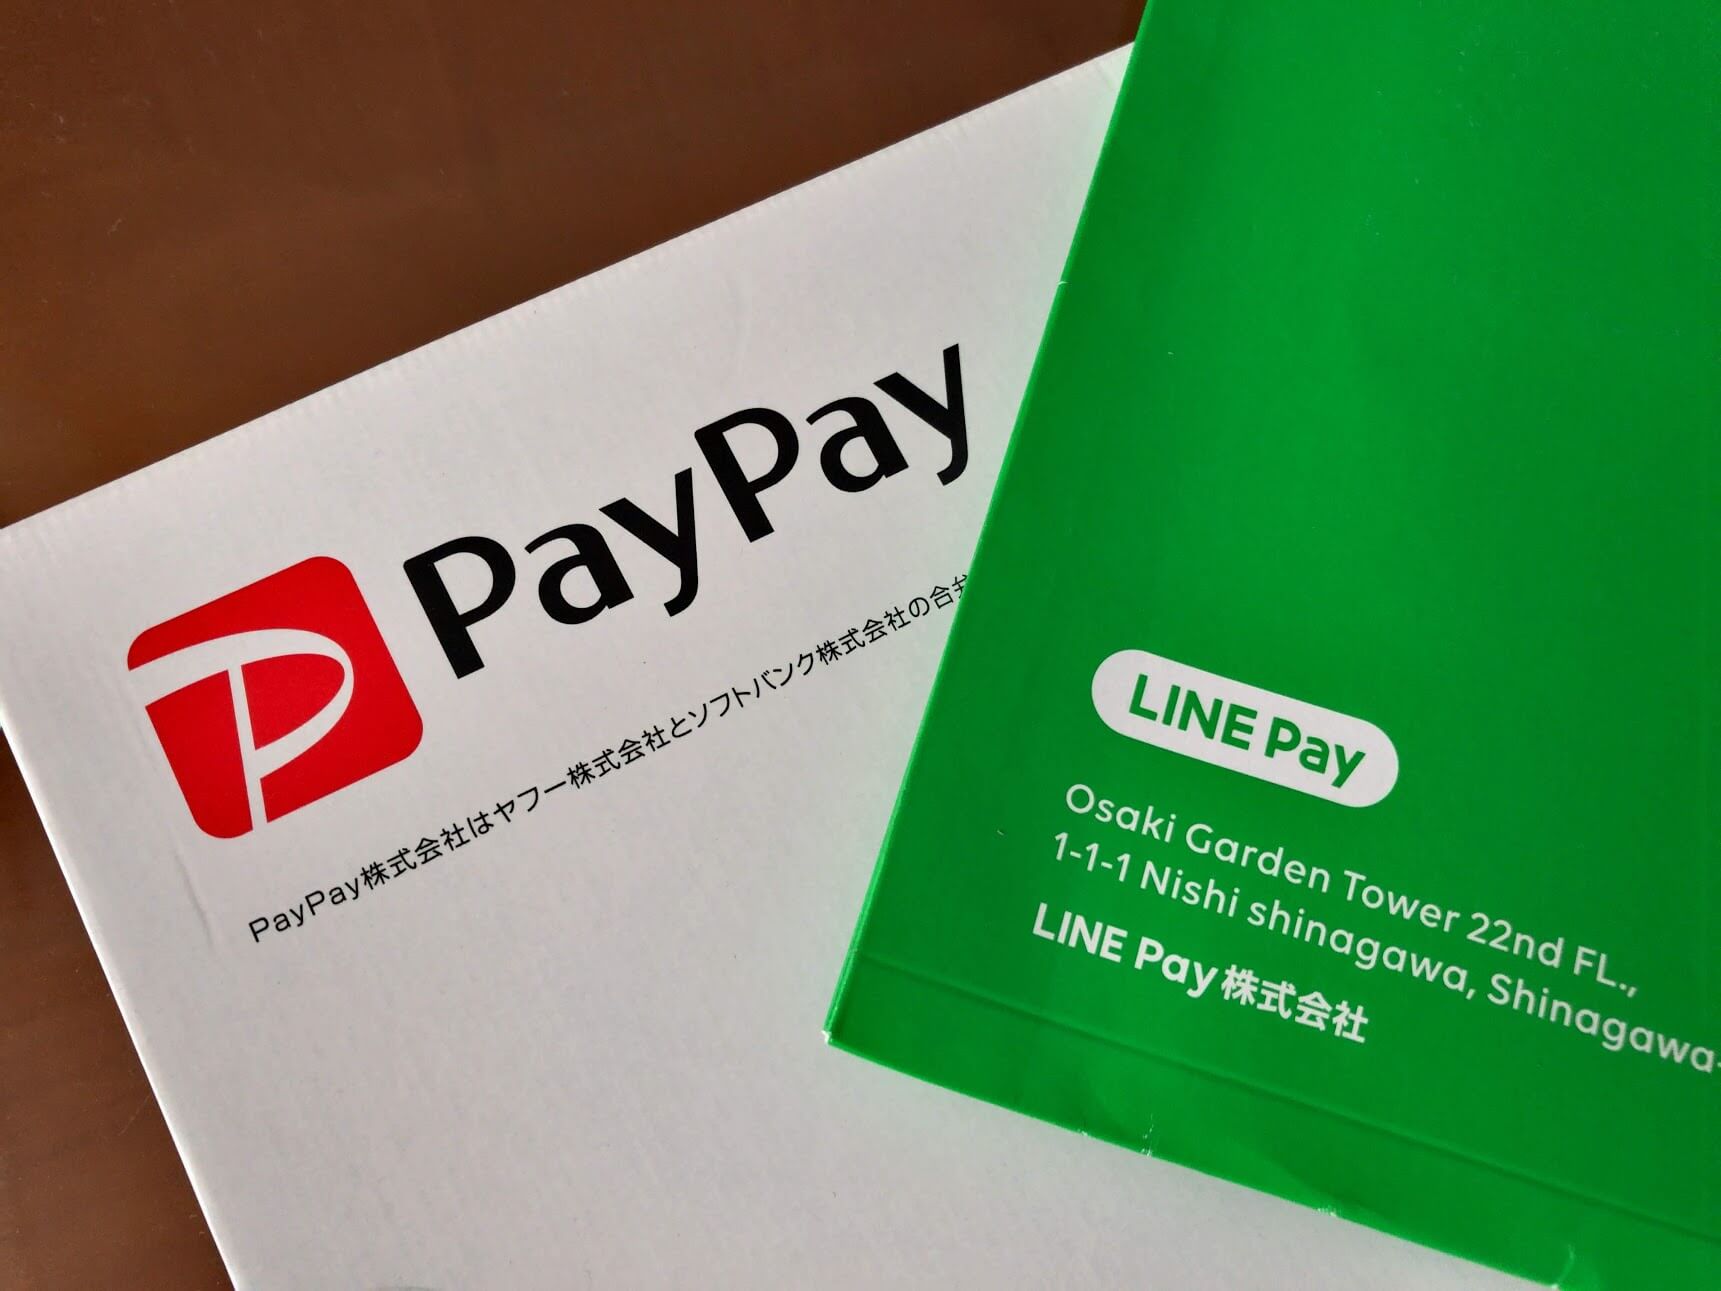 キャッシュレス決済の「PayPay」と「LINE Pay」を導入